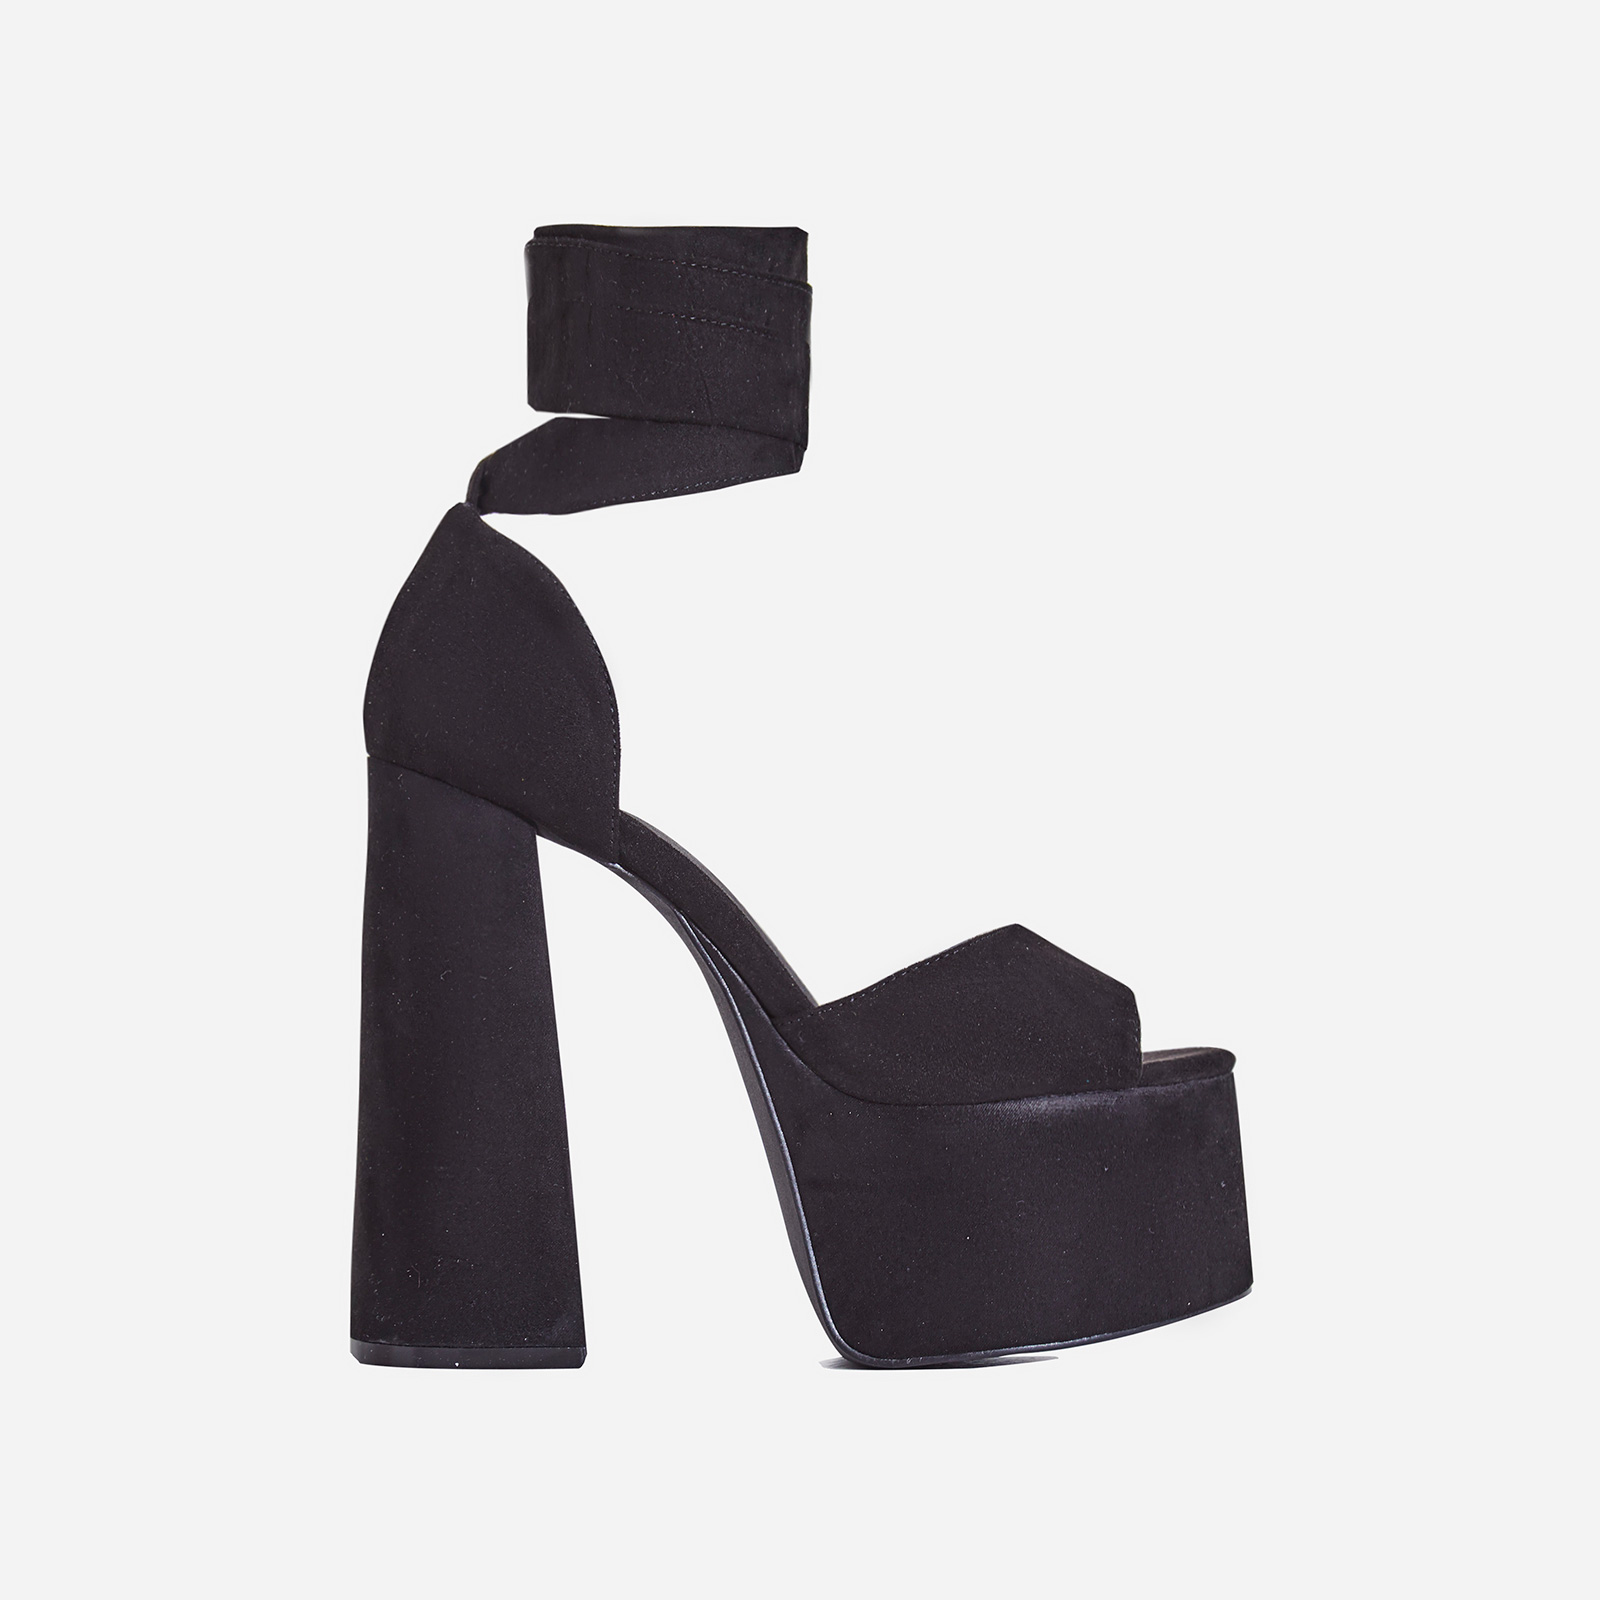 toffee perspex platform block heel in white